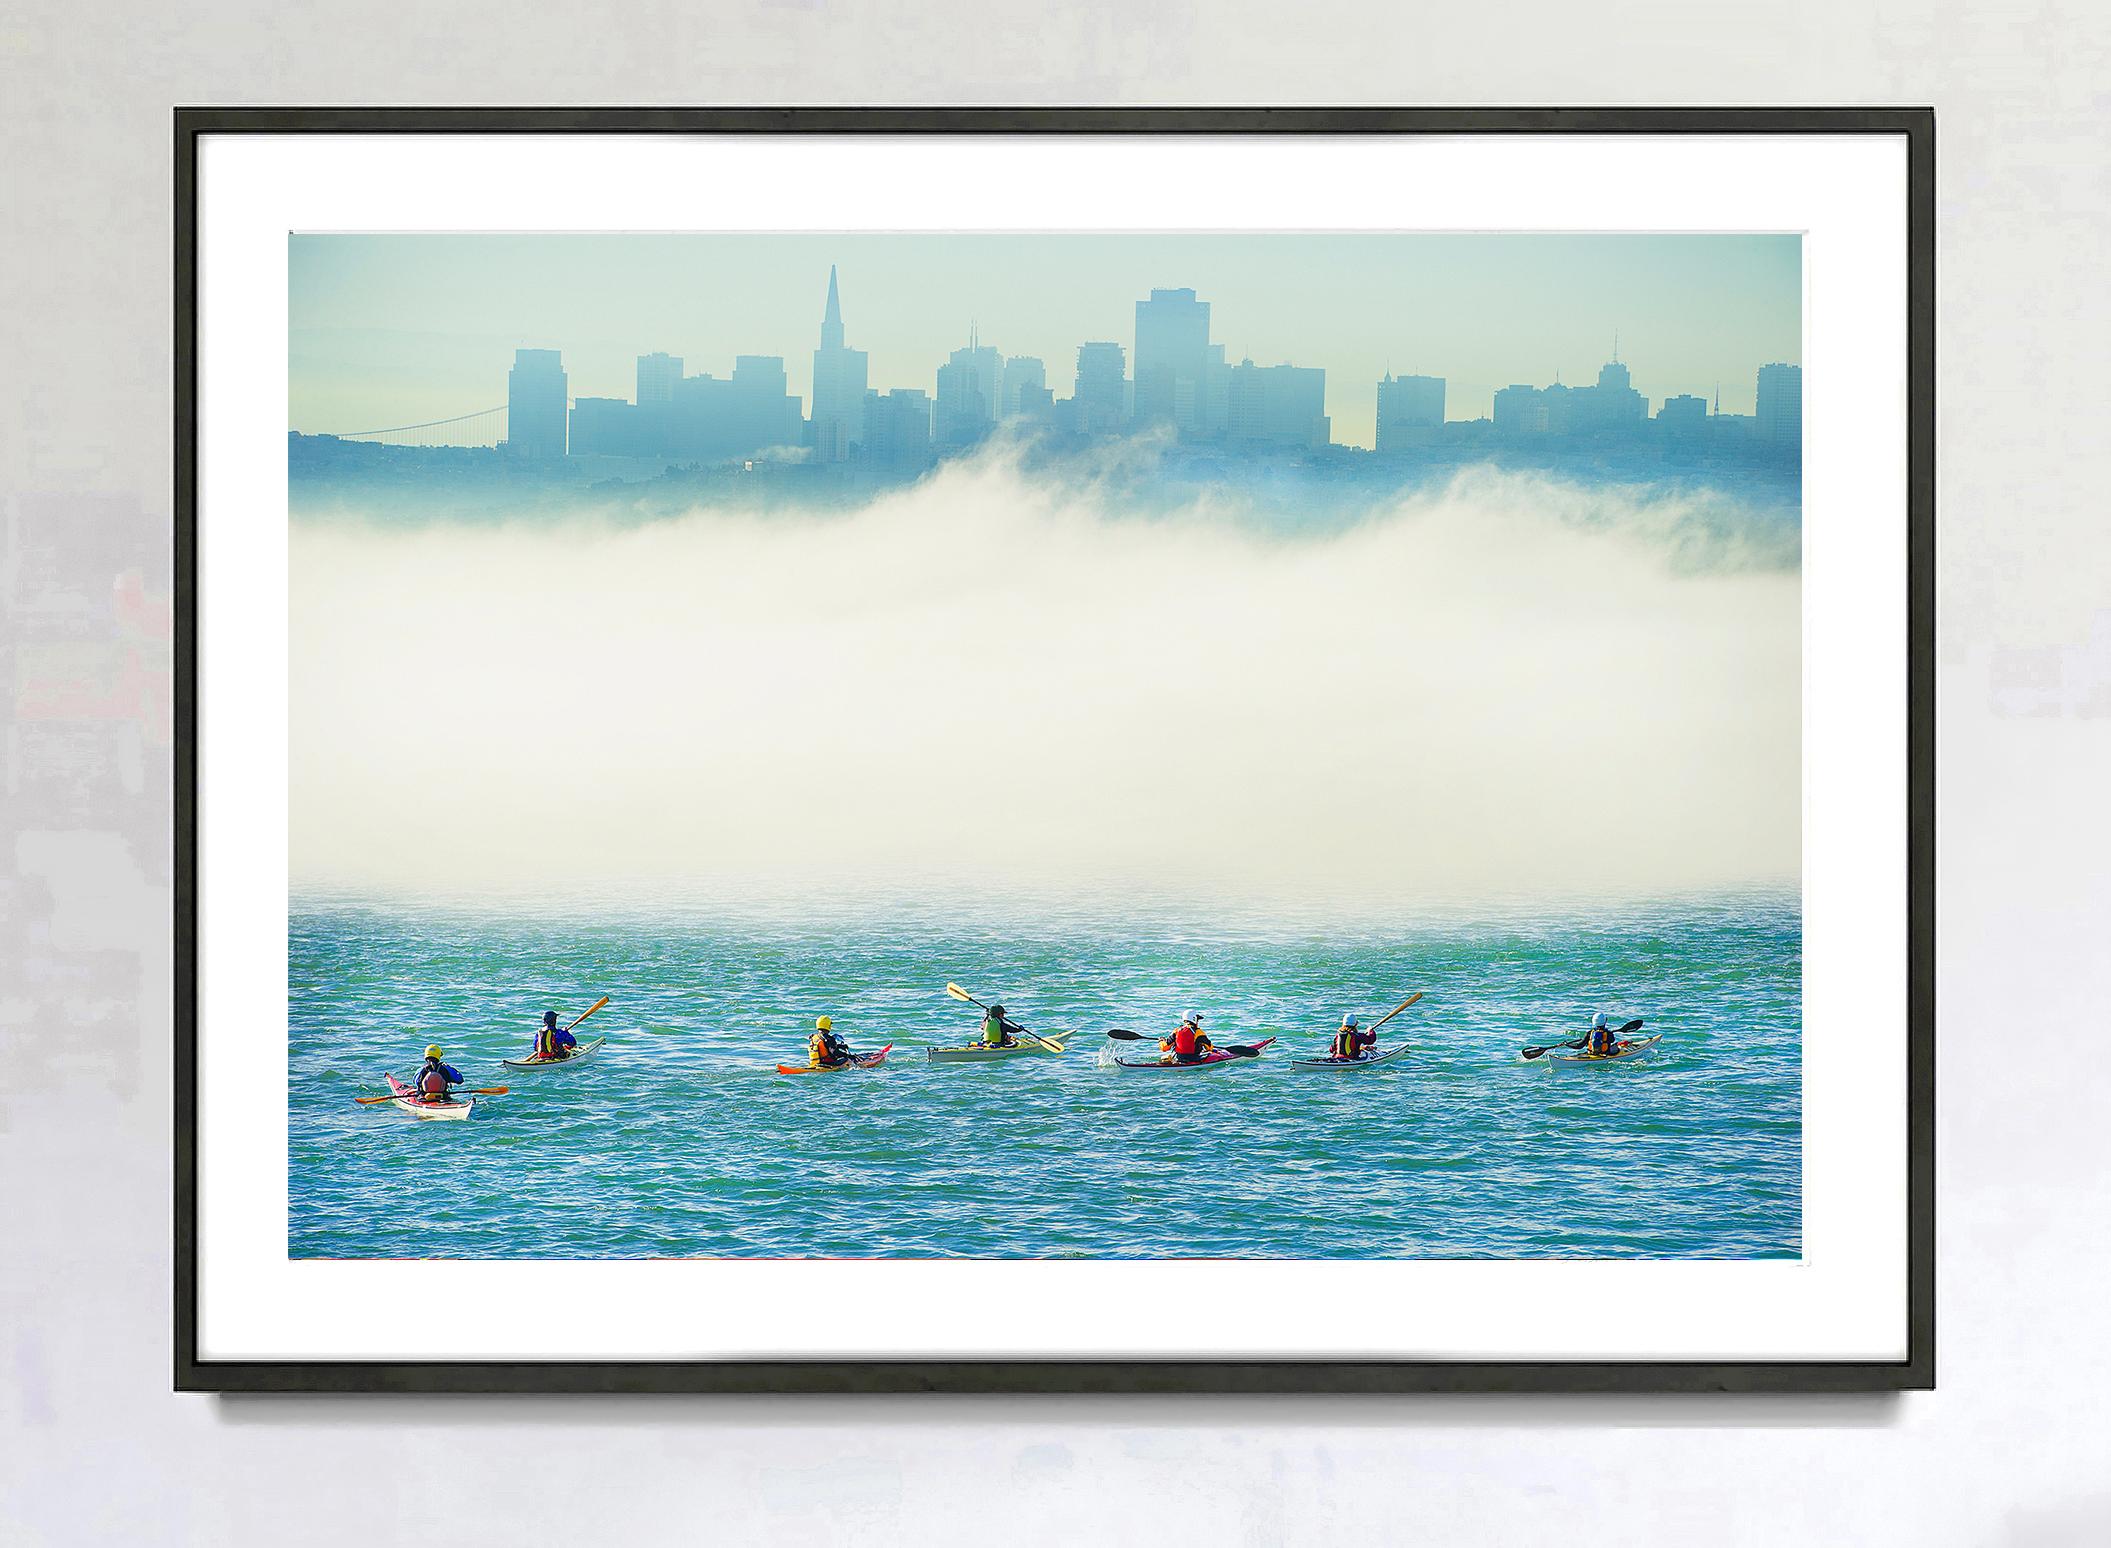 Surreale Kayak-Party in Foggy Metaphysical San Francisco Bay mit gedämpfter Skyline – Photograph von Mitchell Funk